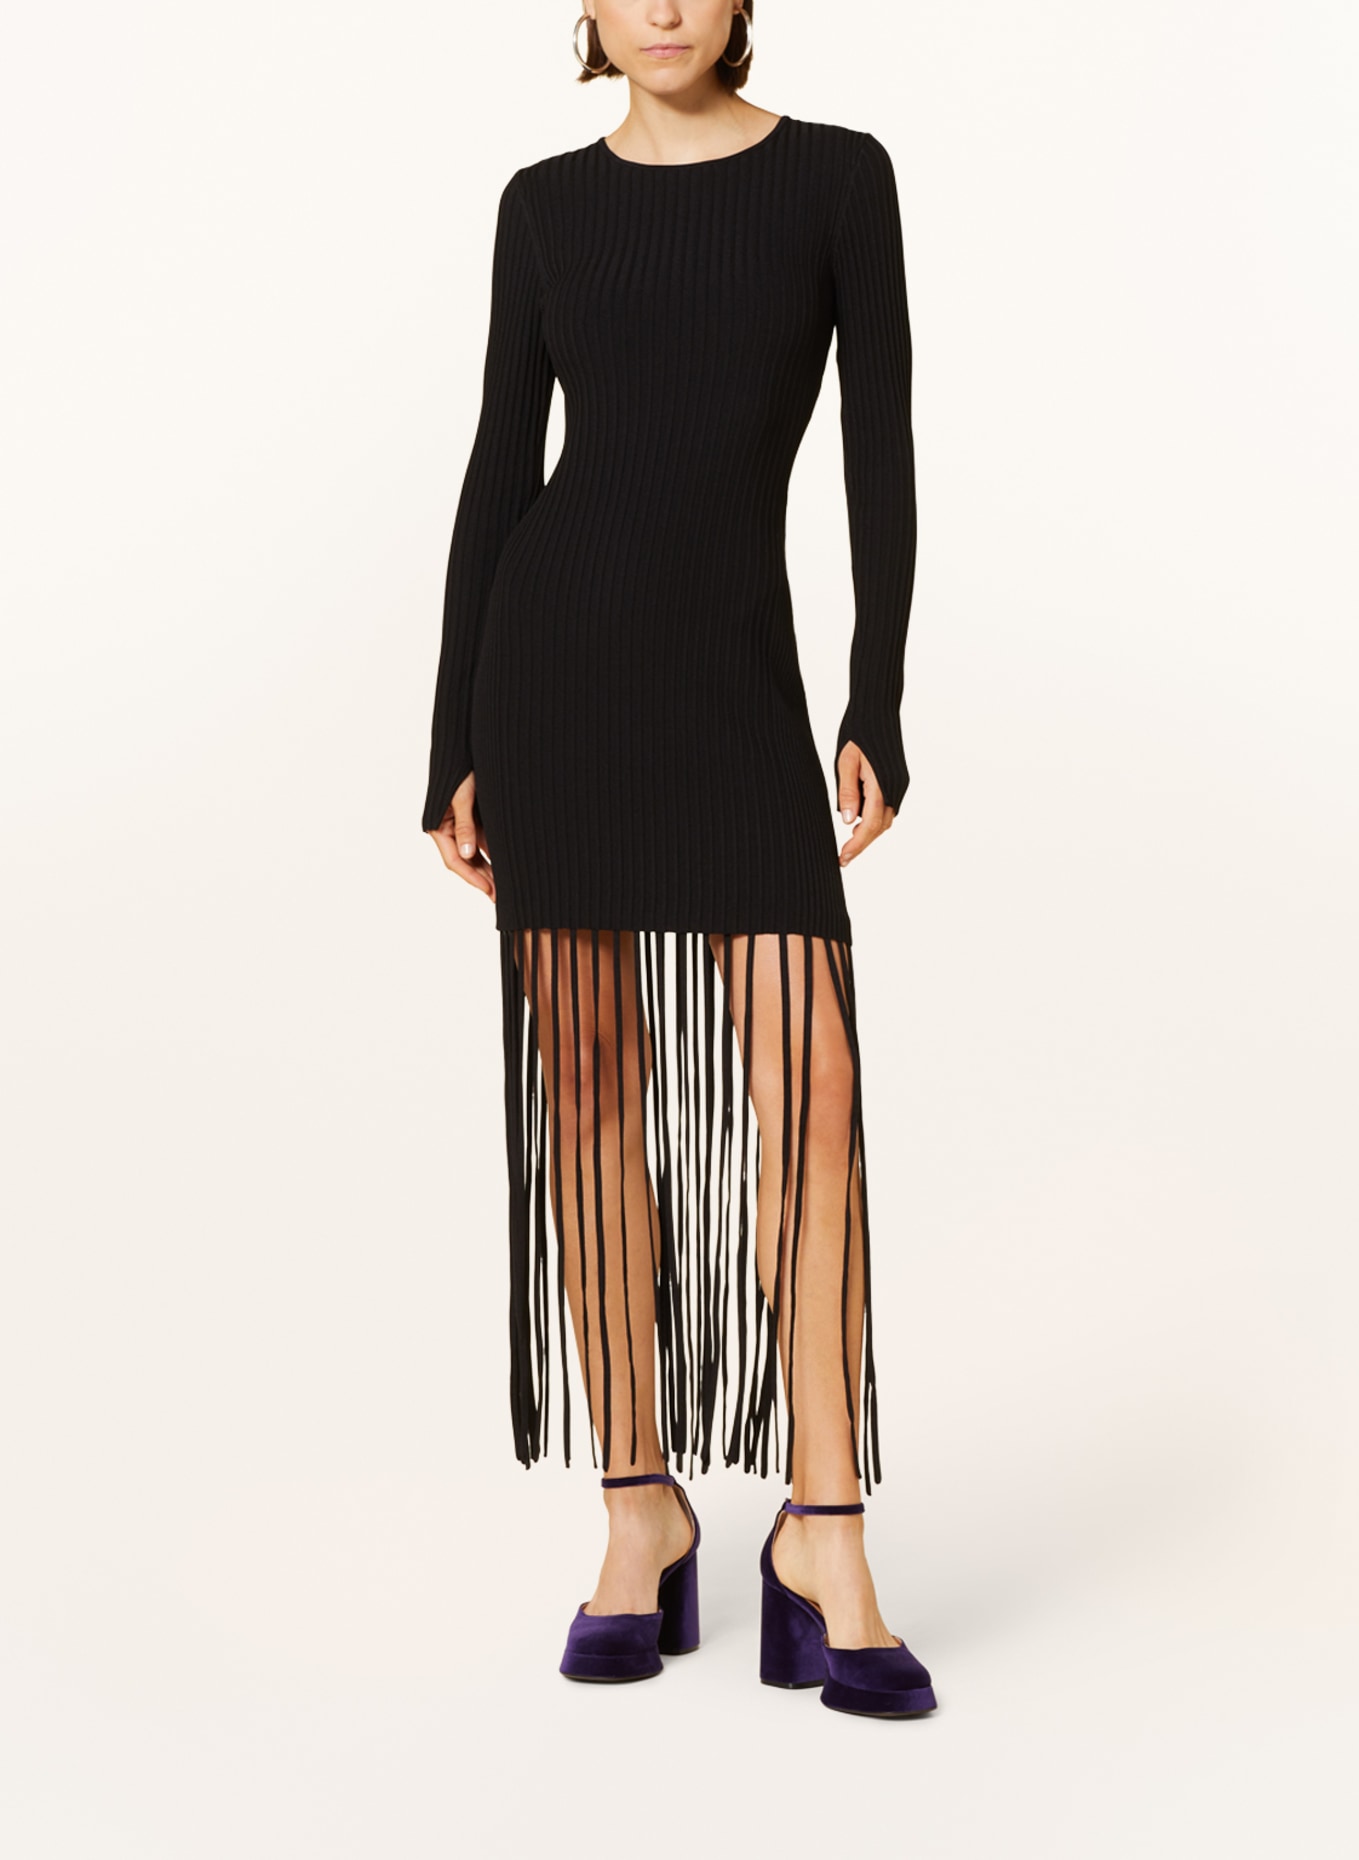 GANNI Knit dress with fringes, Color: BLACK (Image 2)